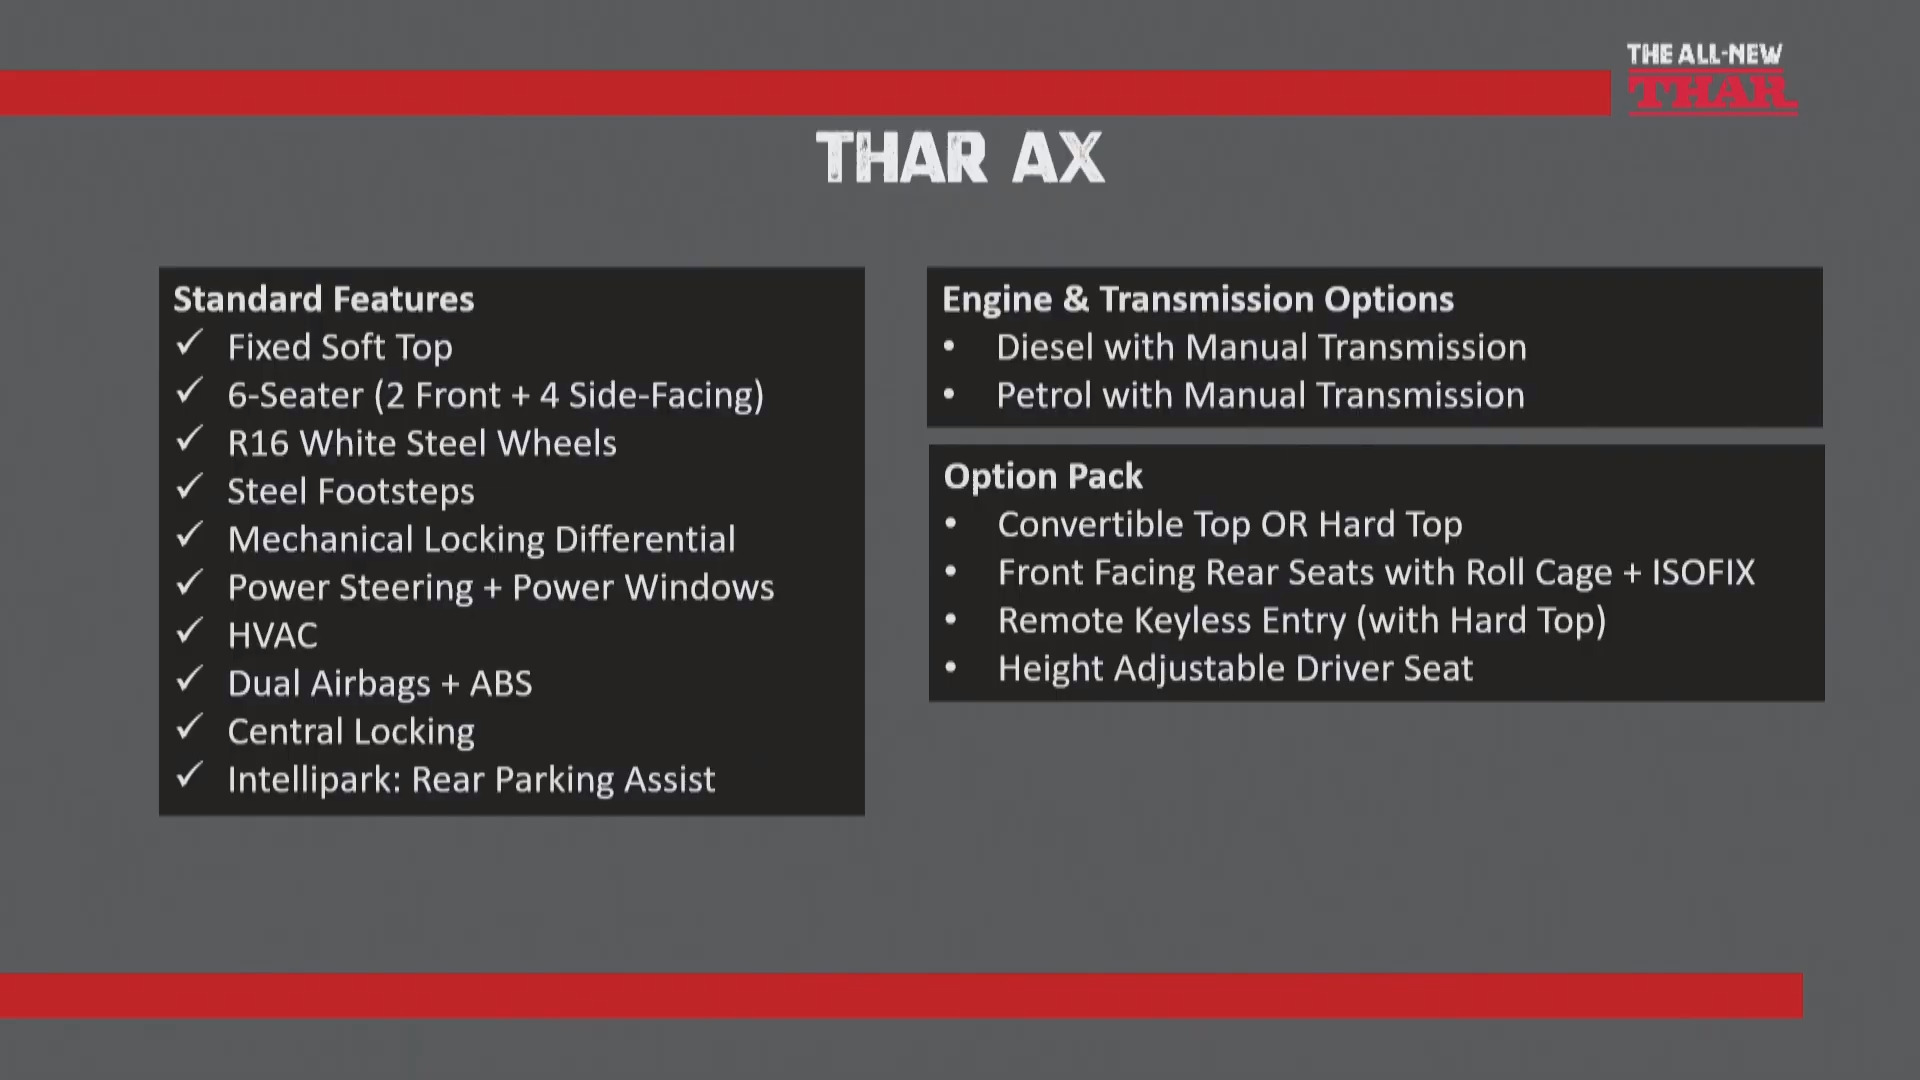 New Mahindra Thar AX Features